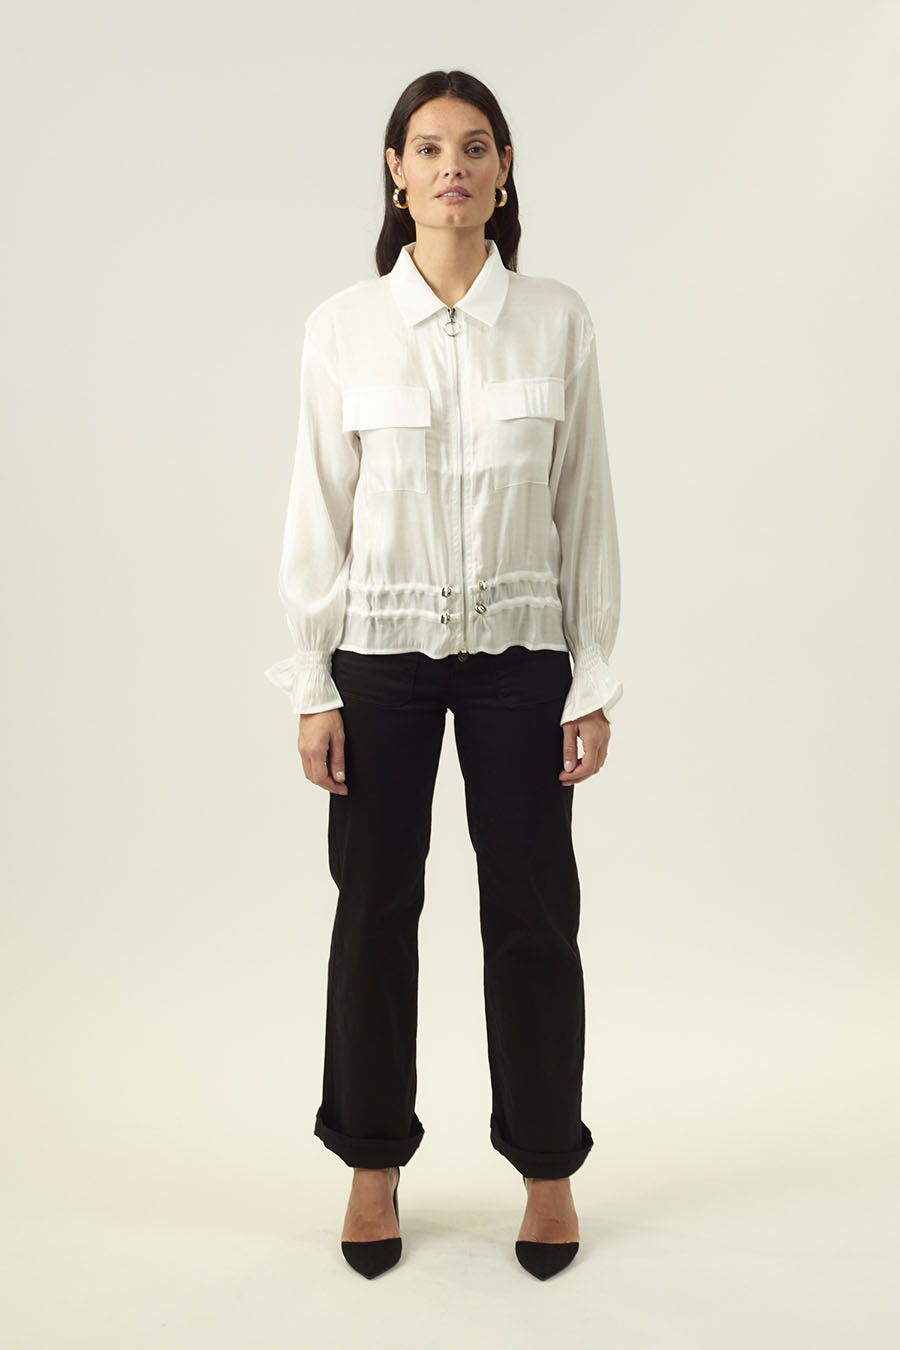 Γυναικείο πουκάμισο Medeea, Λευκό 1